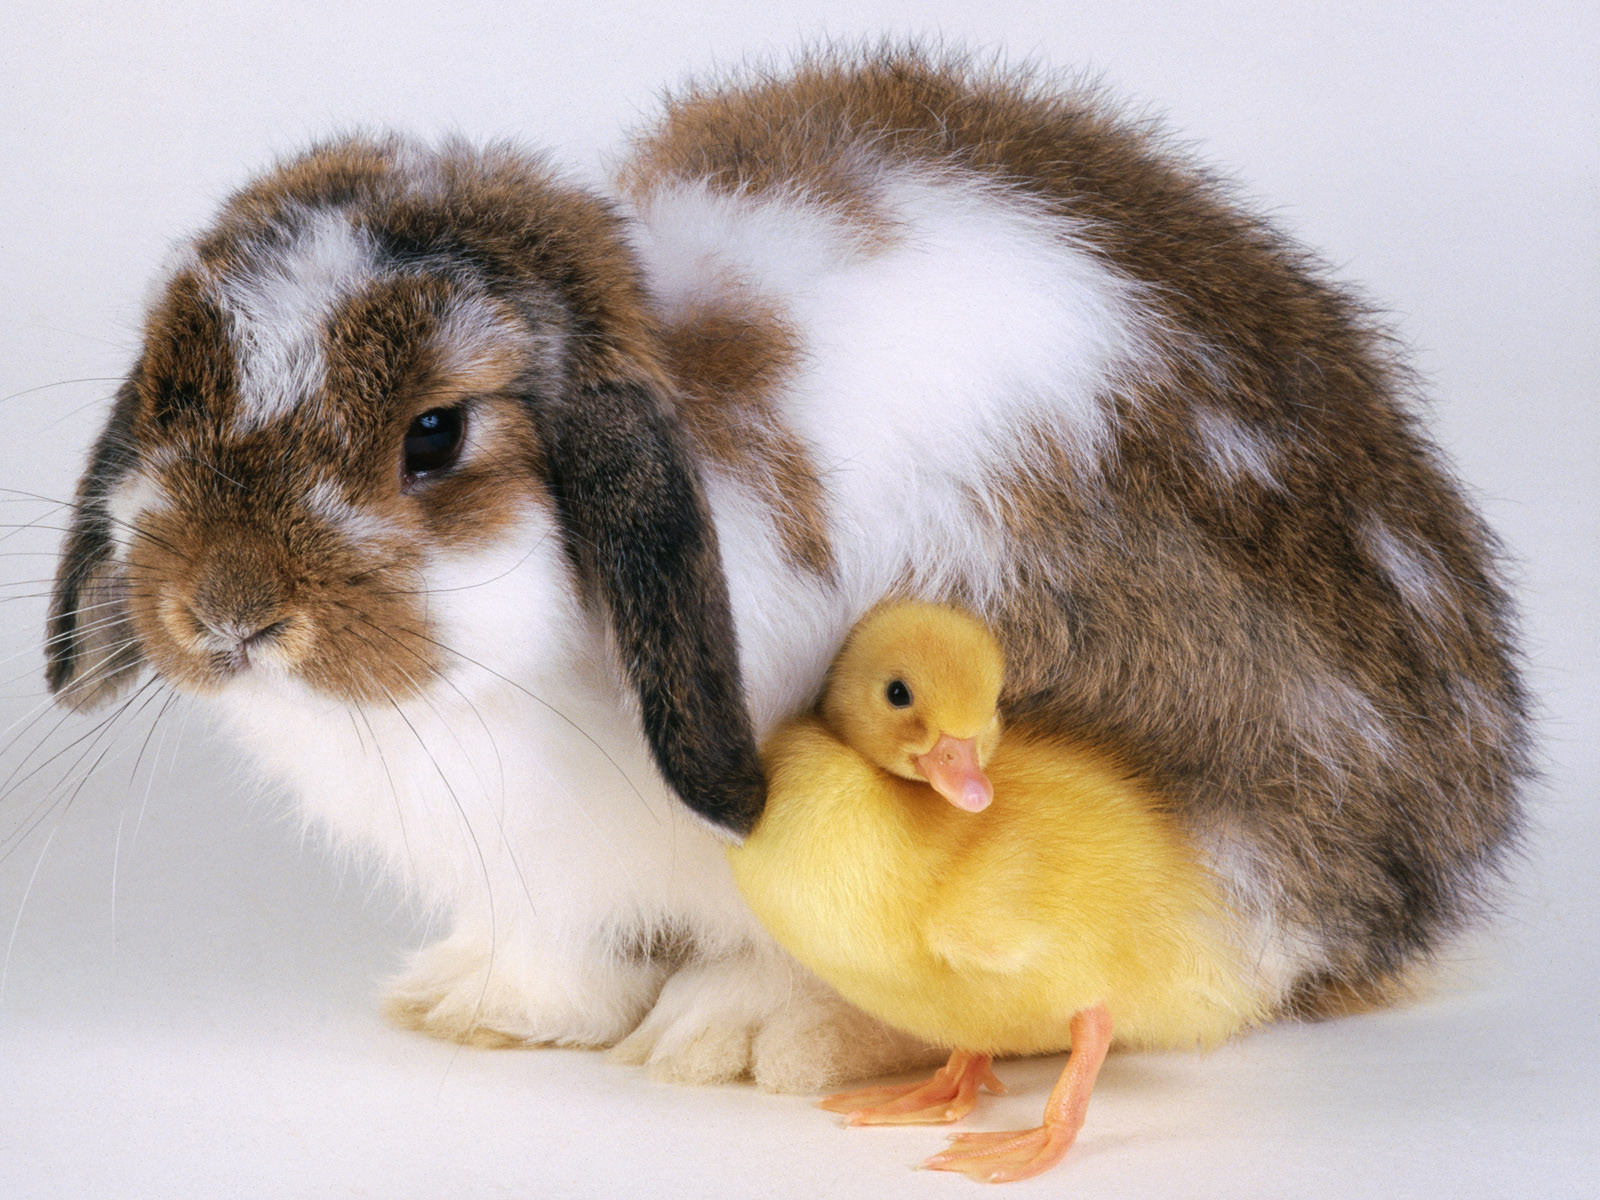 Скачать обои бесплатно Животные, Кролики картинка на рабочий стол ПК